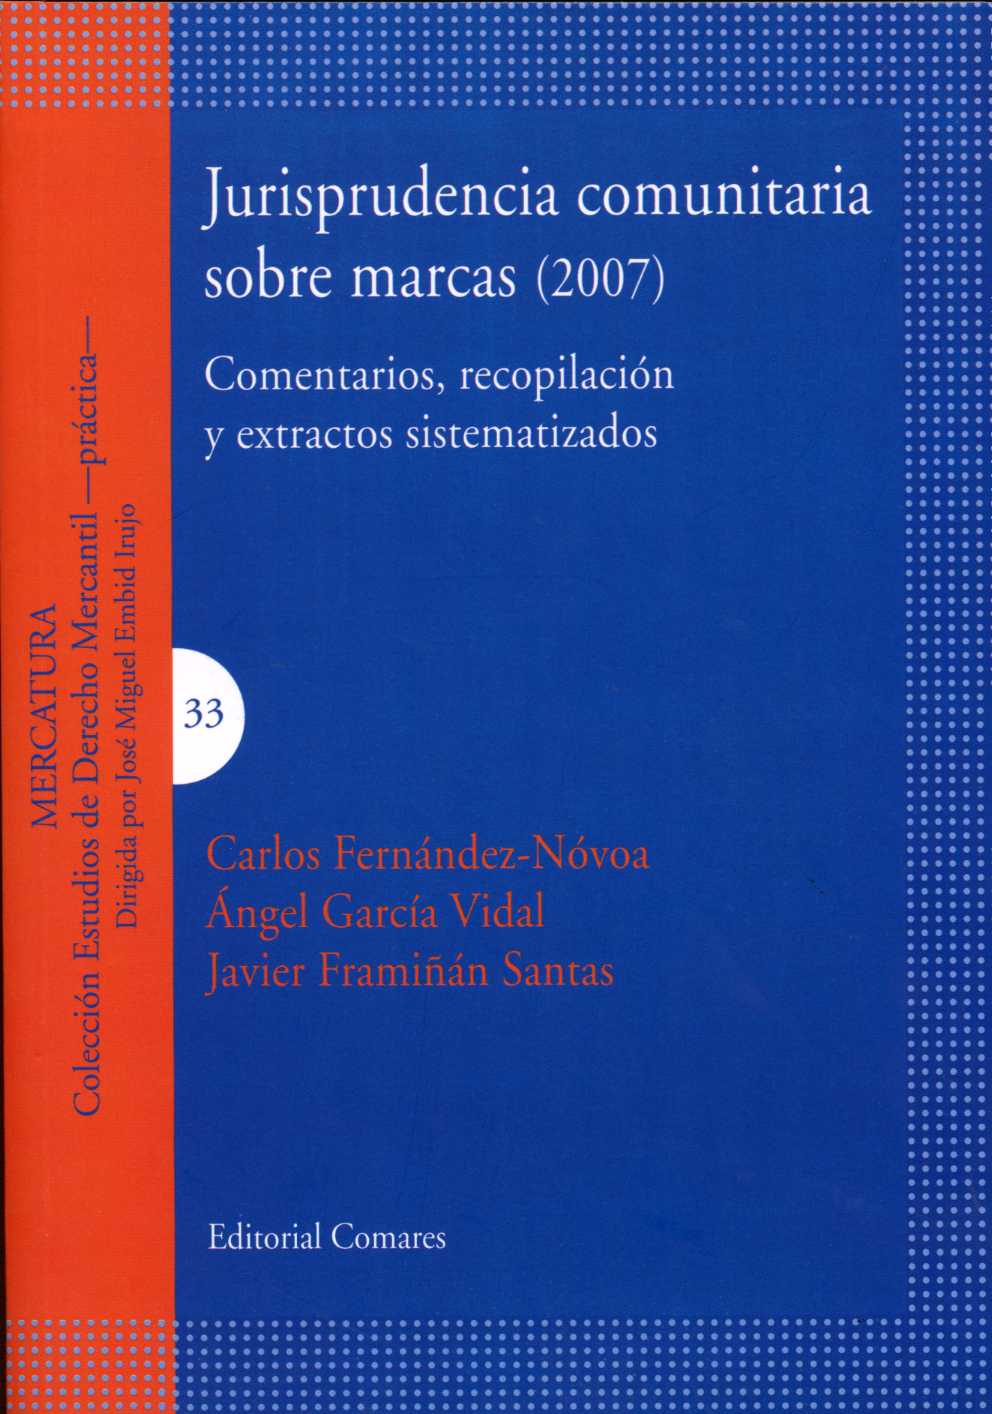 Jurisprudencia Comunitaria Sobre Marcas 2007 Comentarios, Recopilación y Extractos Sistematizados-0